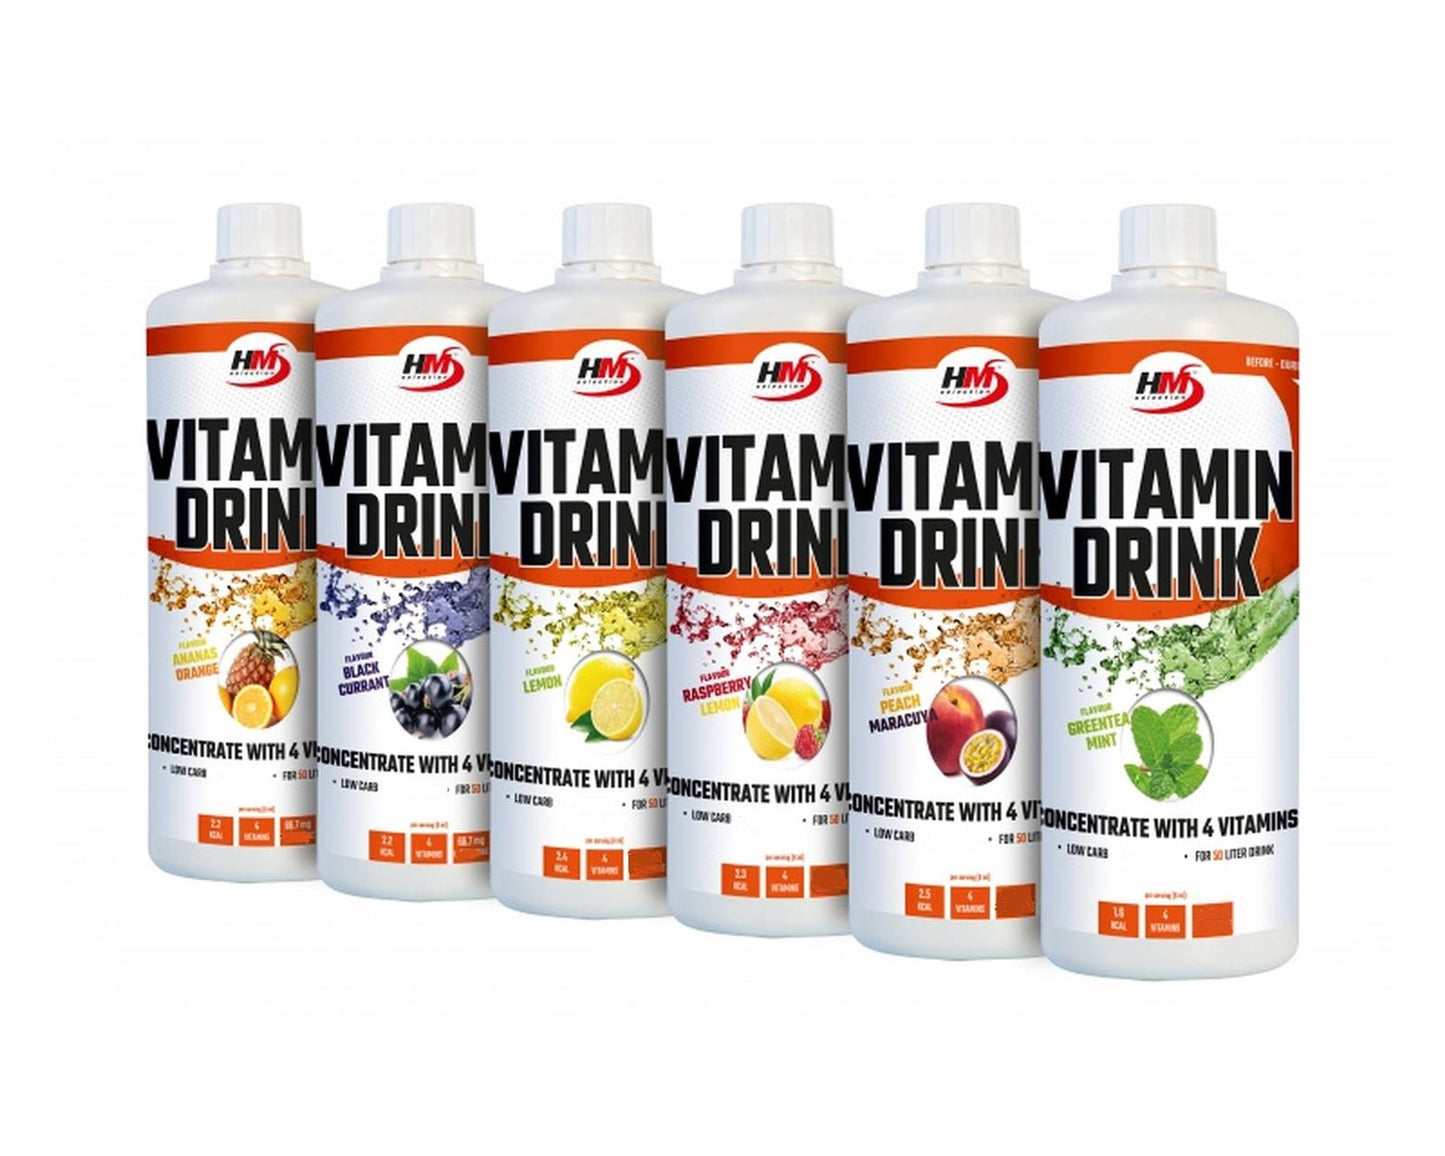 Vitamin Drink, 1 Liter - Getränkekonzentrat mit Vitaminzusatz, glutenfrei